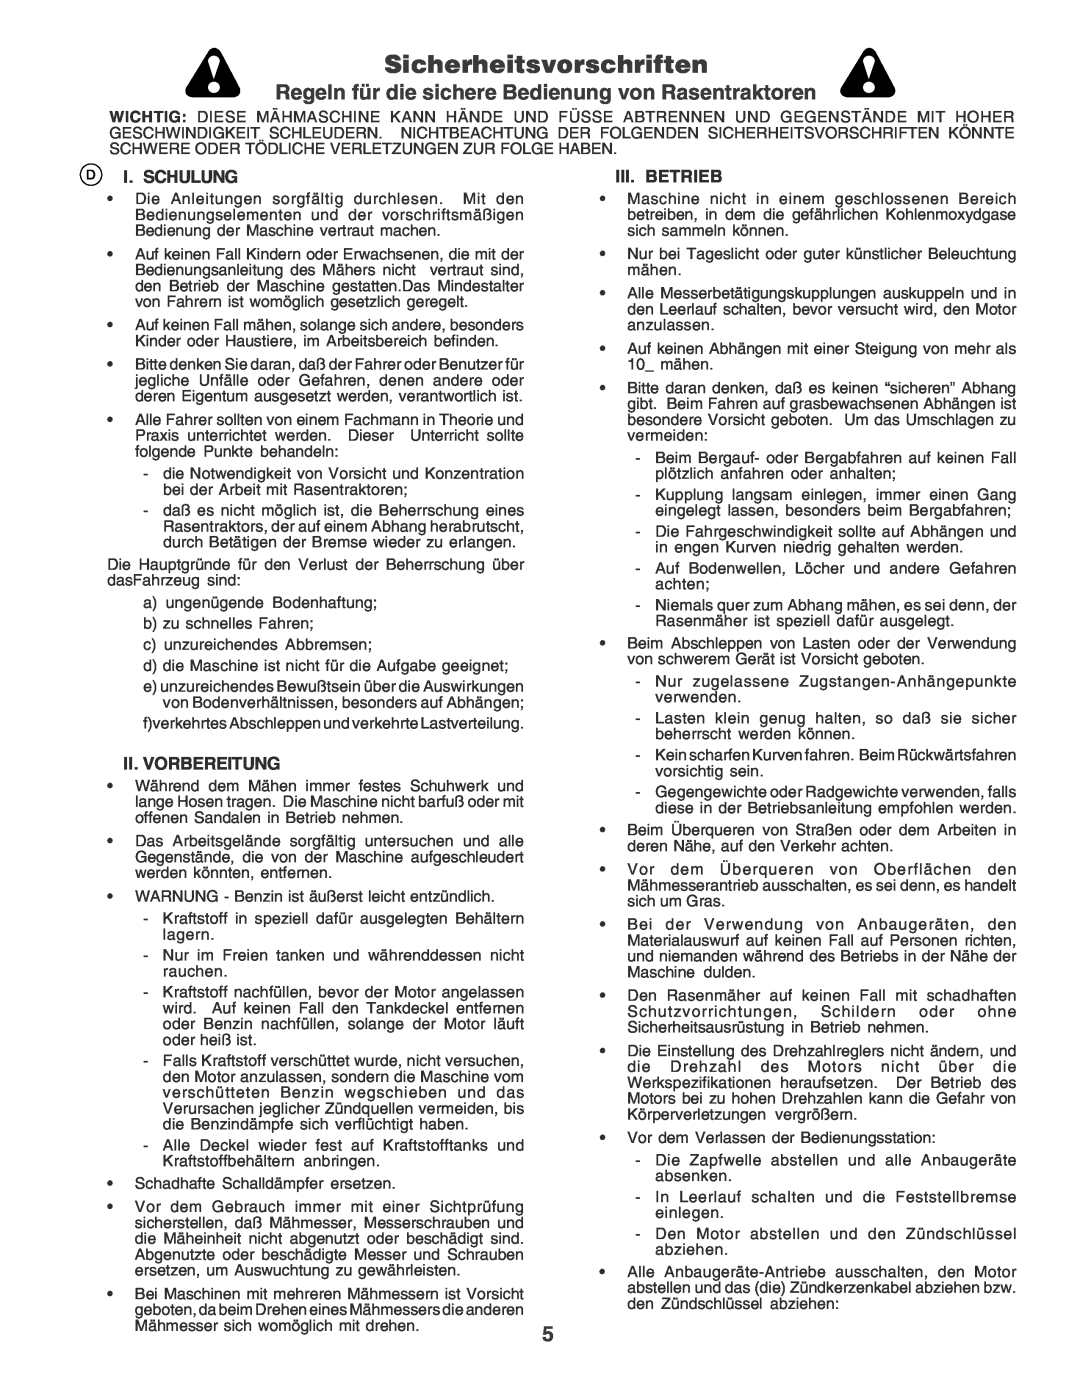 Husqvarna CTH170 Sicherheitsvorschriften, Regeln für die sichere Bedienung von Rasentraktoren, I. Schulung, Iii. Betrieb 